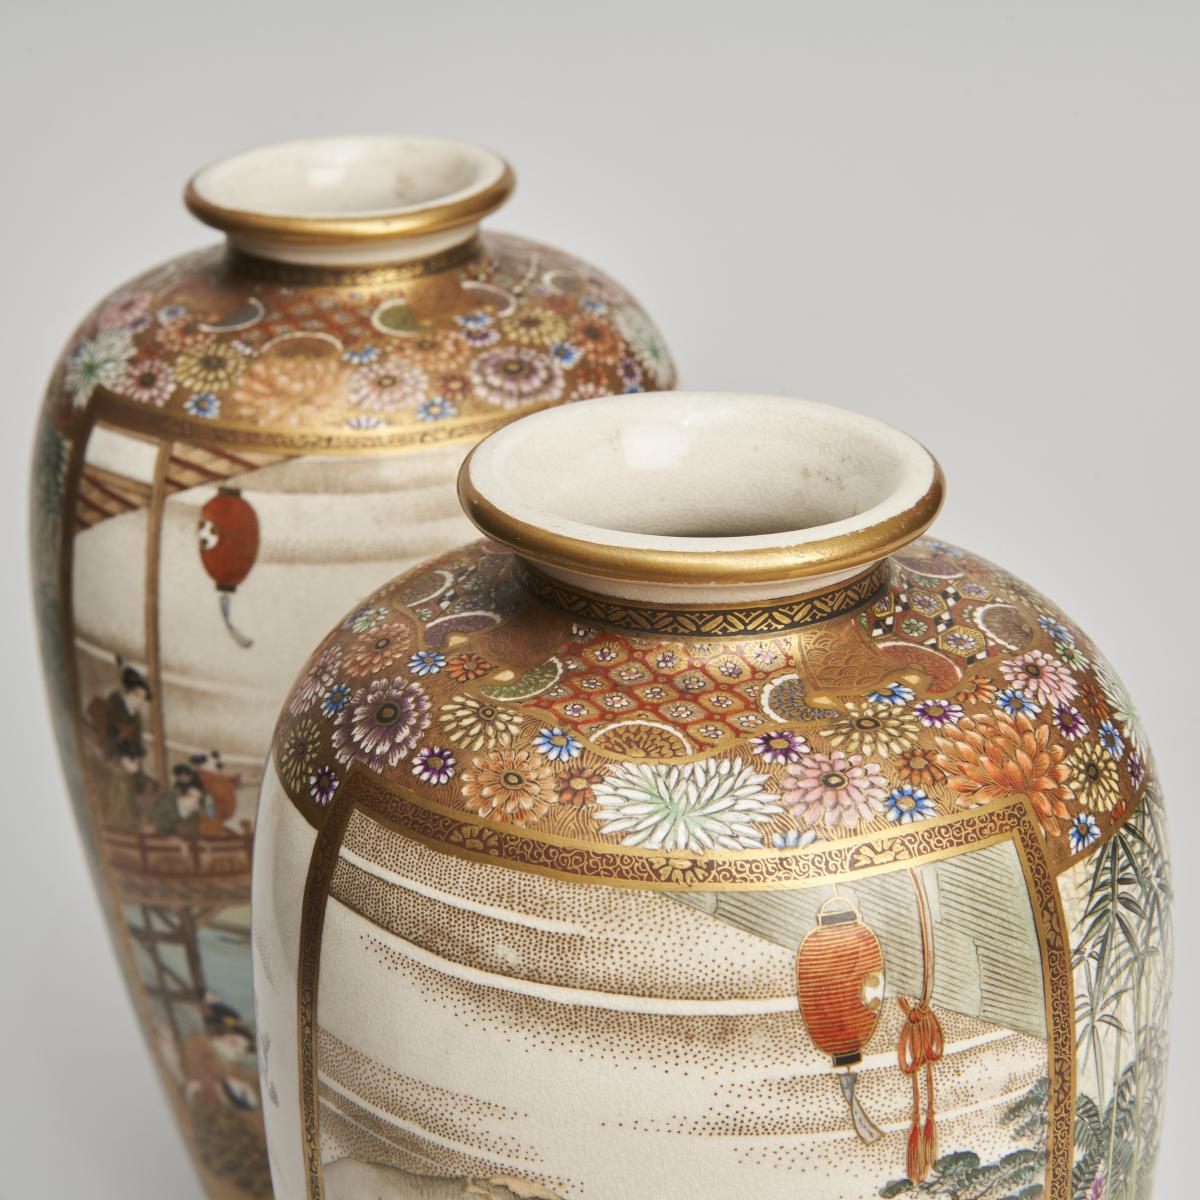 Japanese Meiji Period satsuma vases